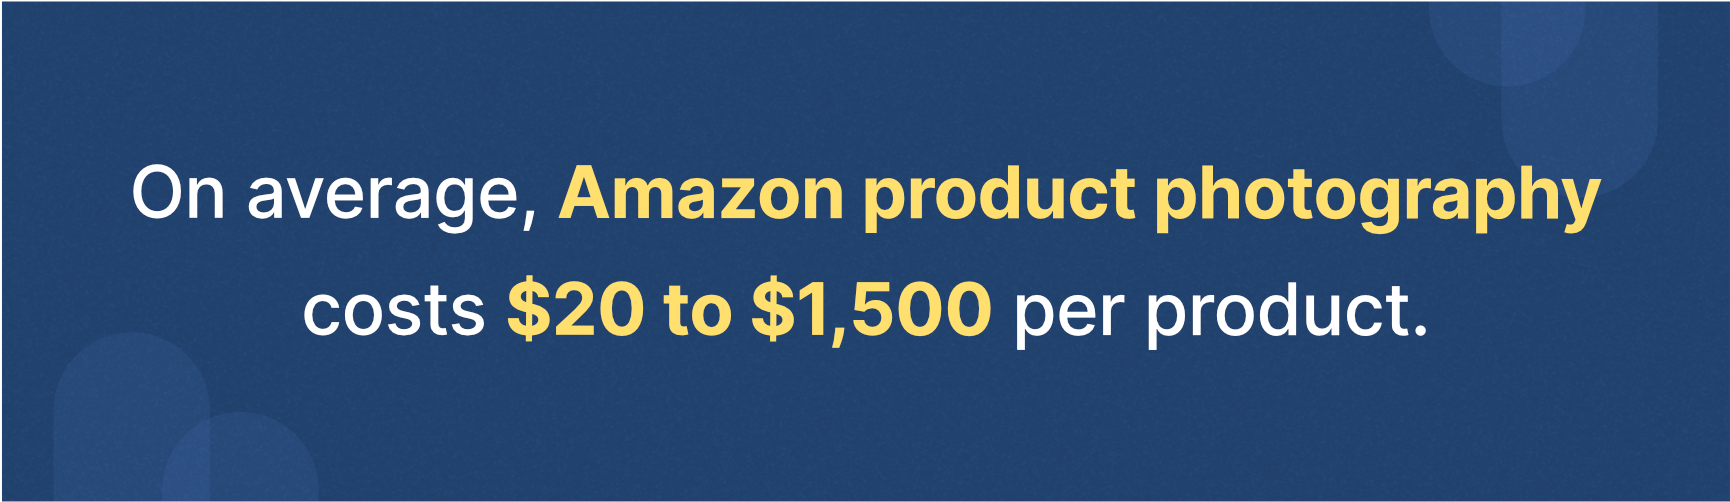 平均亚马逊产品摄影成本